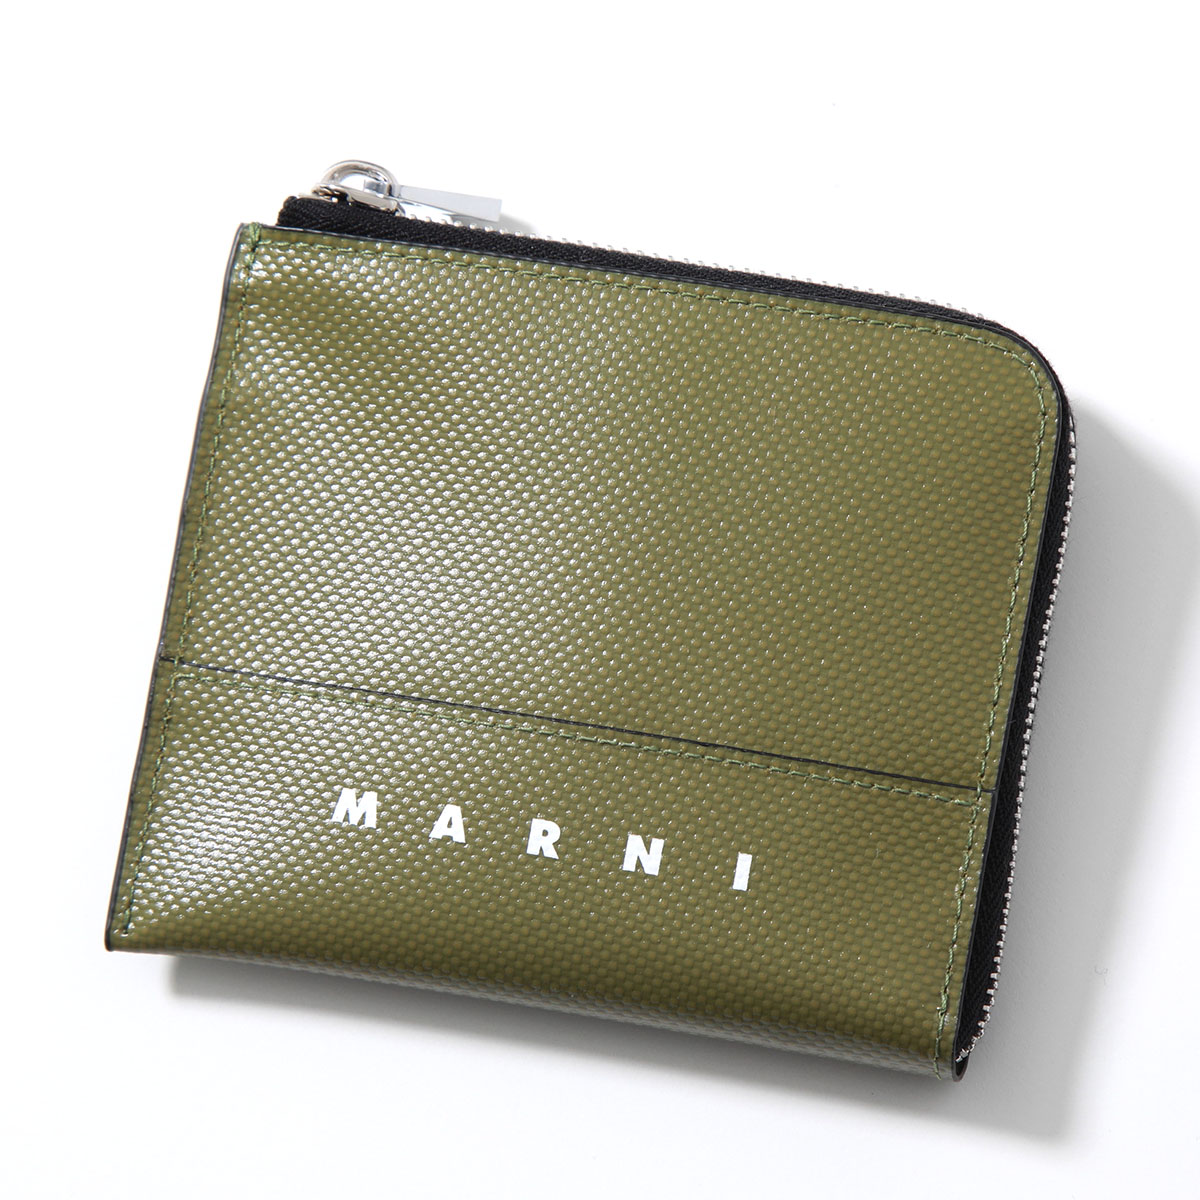 MARNI マルニ コインケース PFMI0075A0 P5769 メンズ ミニ財布 カード